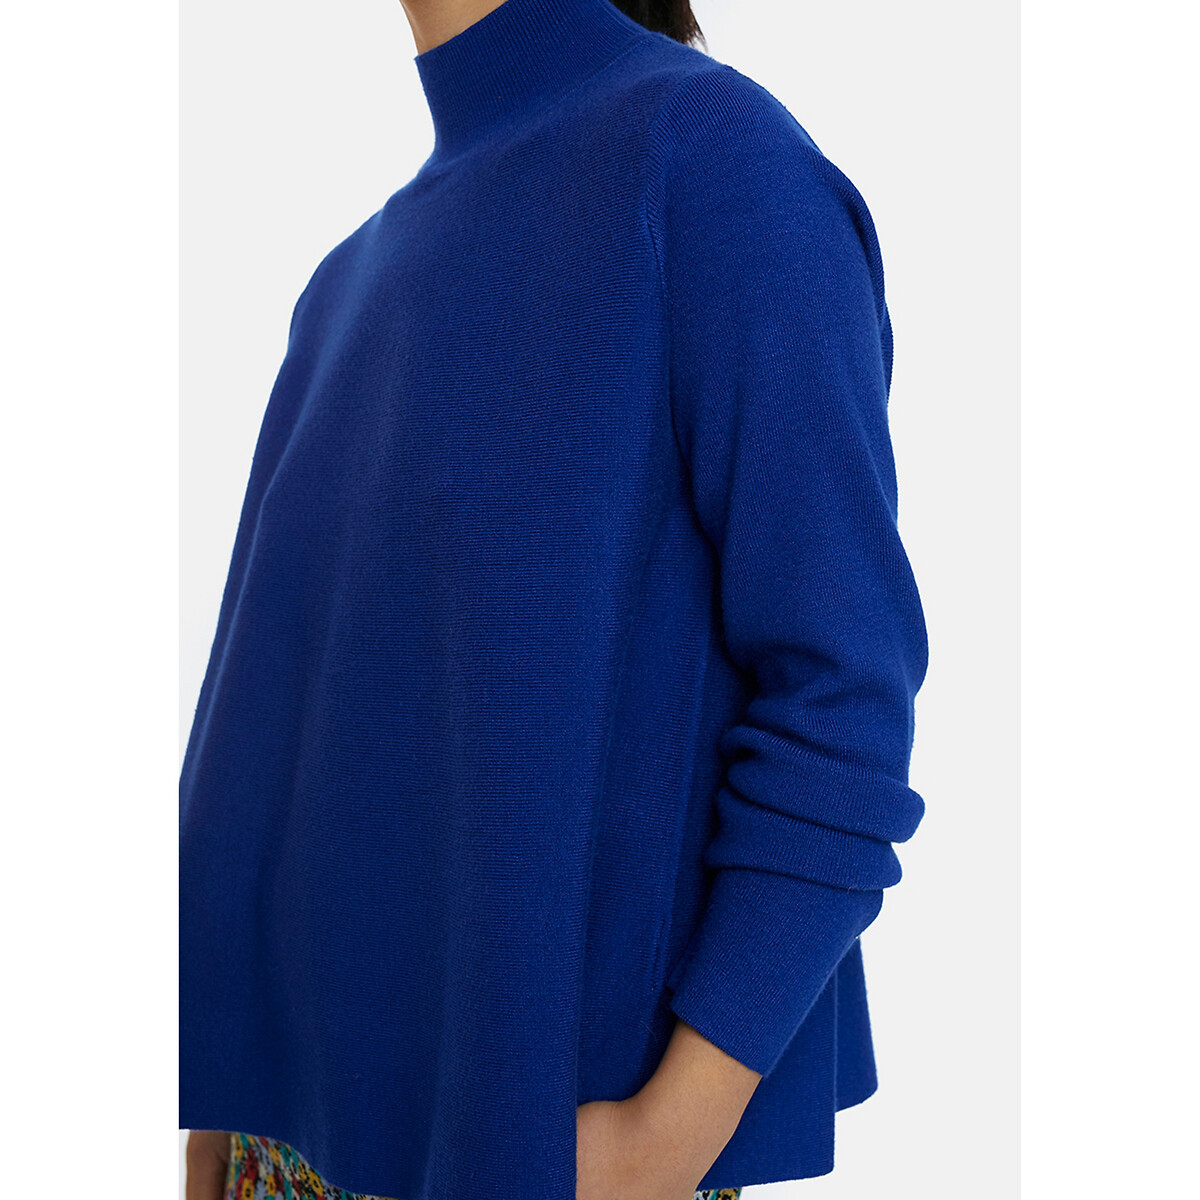 Пуловер La Redoute С воротником-стойкой широкий покрой S синий, размер S - фото 5